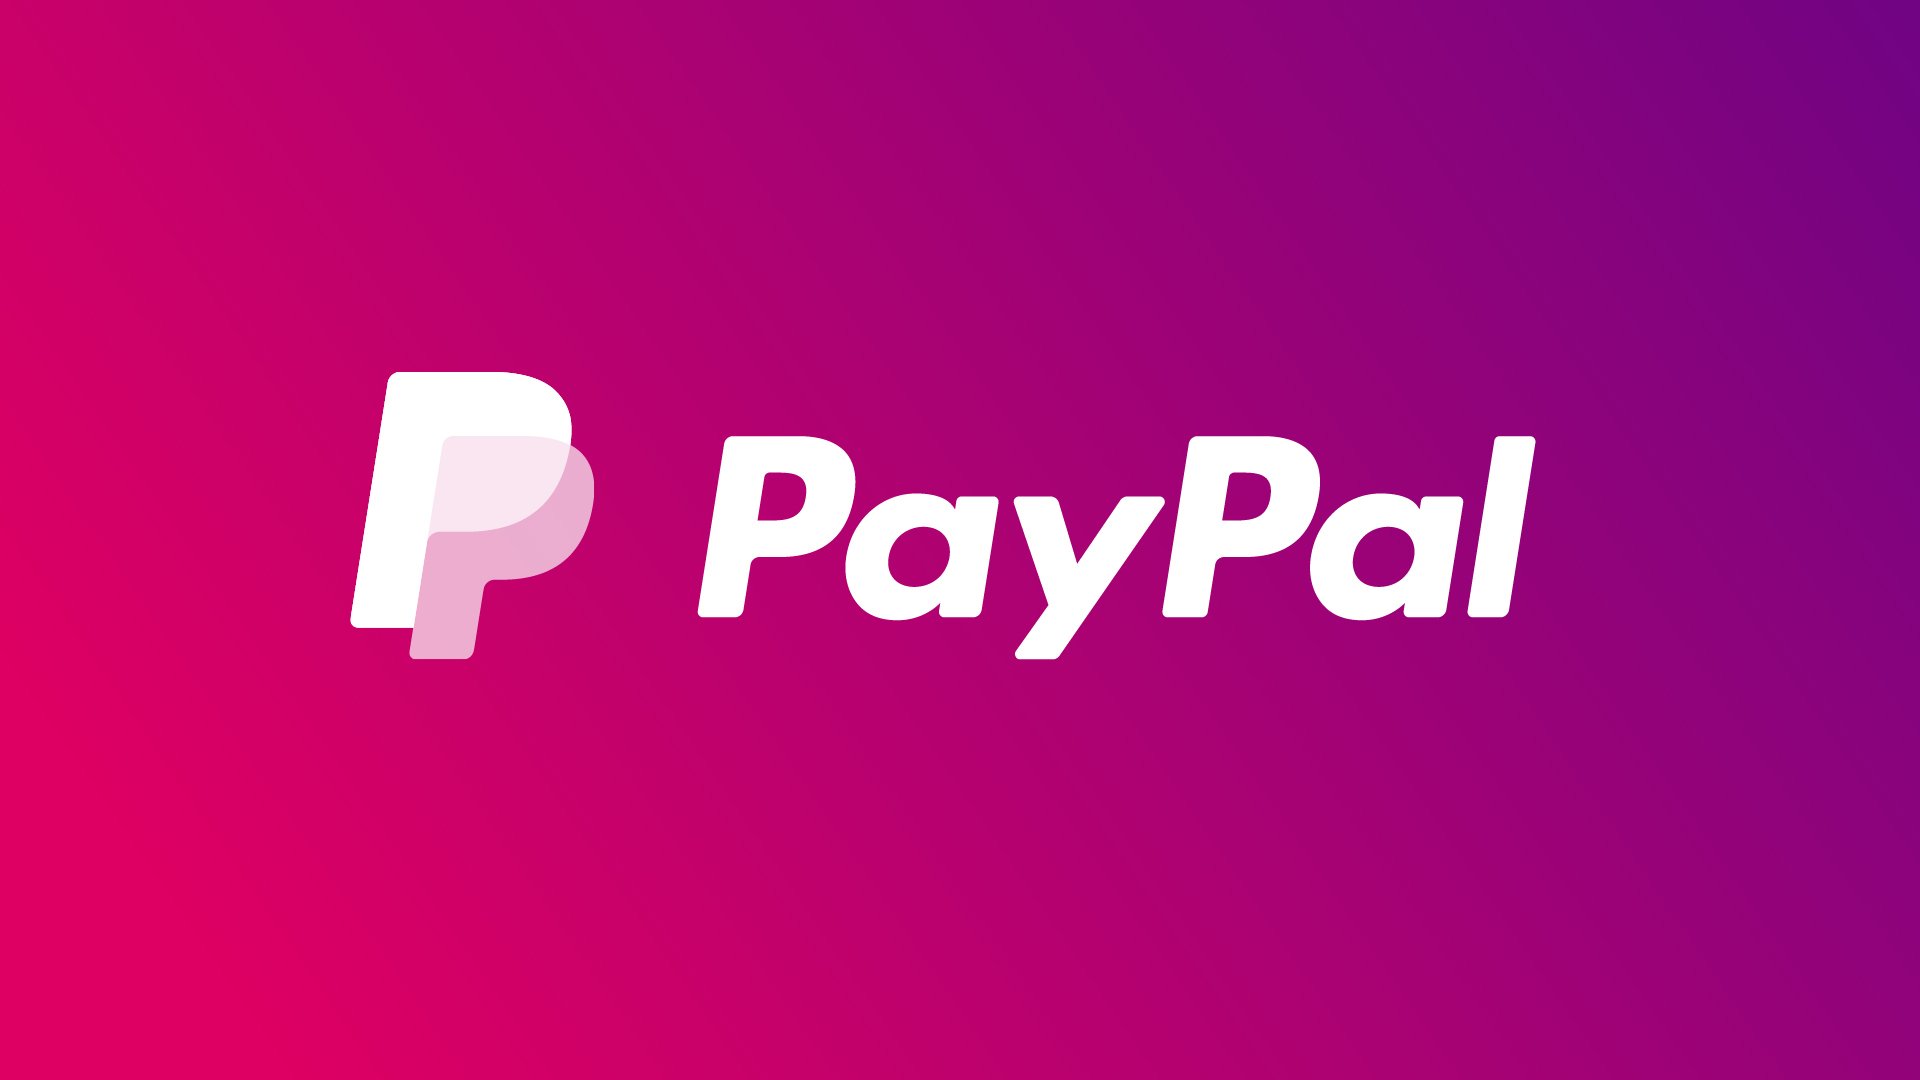 PayPal переходит на биржевую торговлю акциями. Что об этом думают инвесторы и аналитики